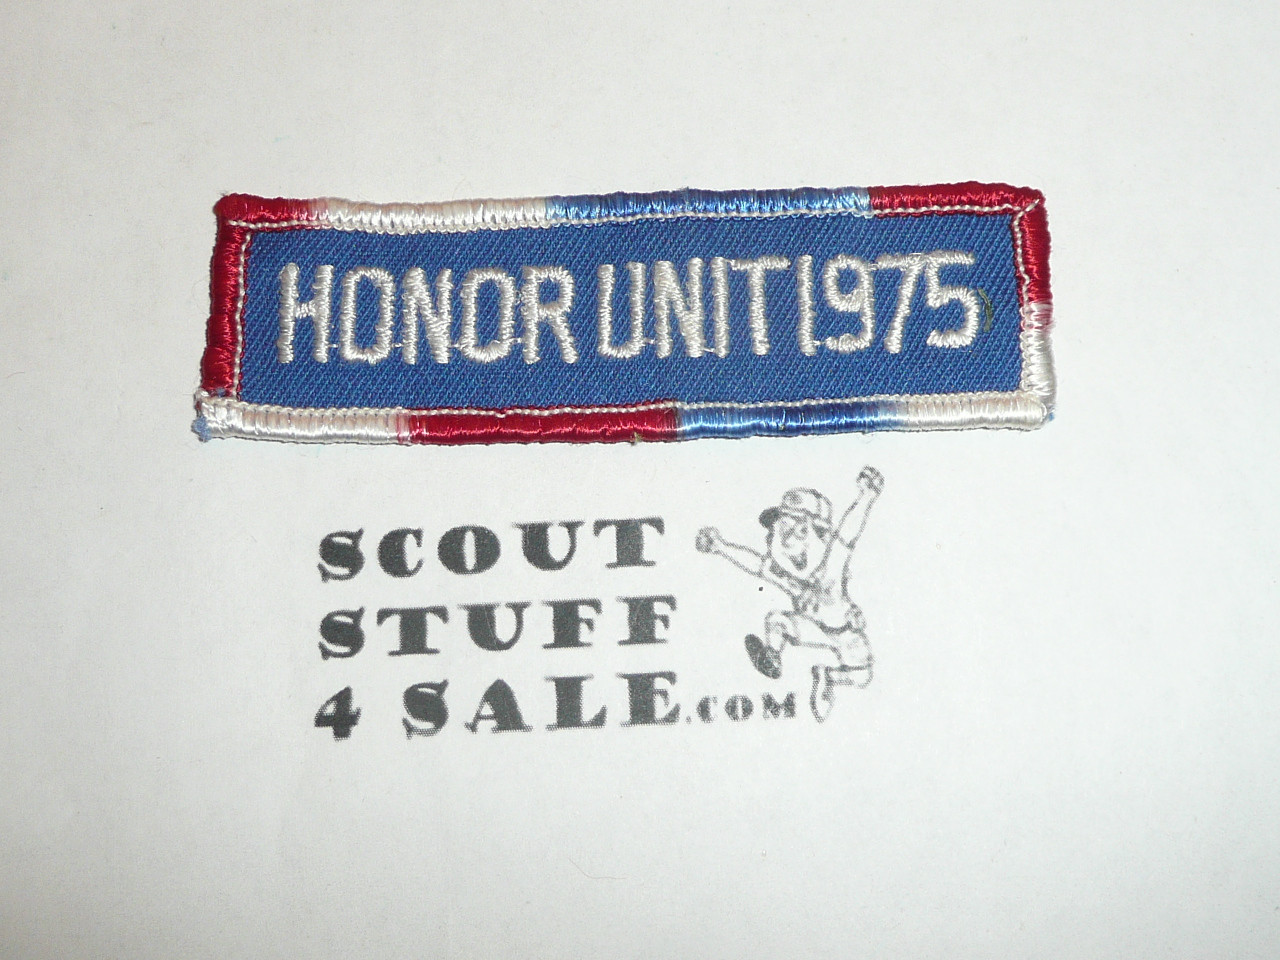 Lake Arrowhead Scout Camps, Honor Unit Segment Patch, 1975